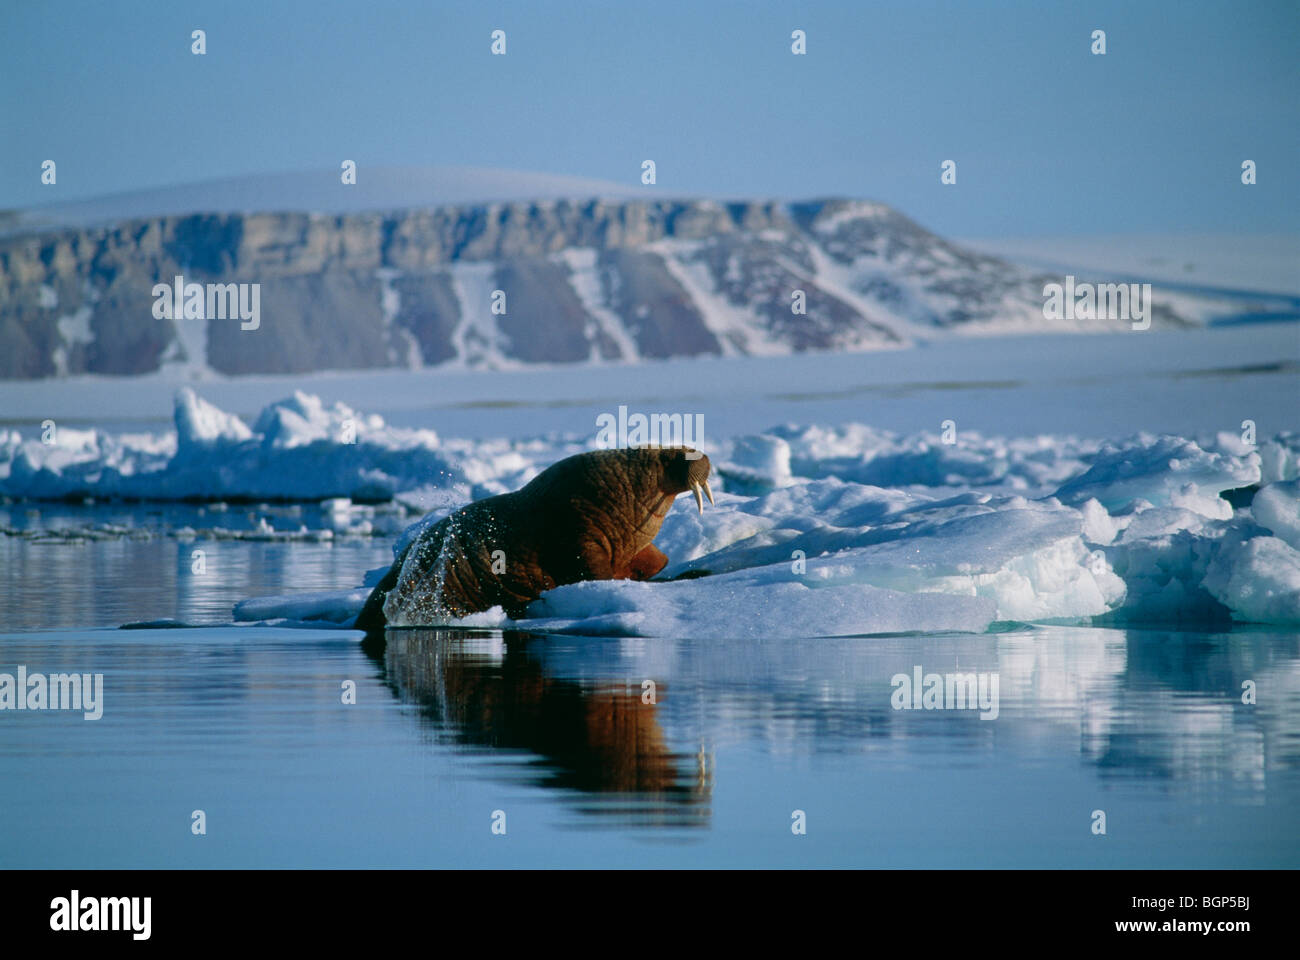 Обитатели северного океана. Северный Ледовитый океан животный мир. Животные Северного Ледовитого океана. Остров Гренландия животные. Severniy ledovitiy Okean zhivotnie.